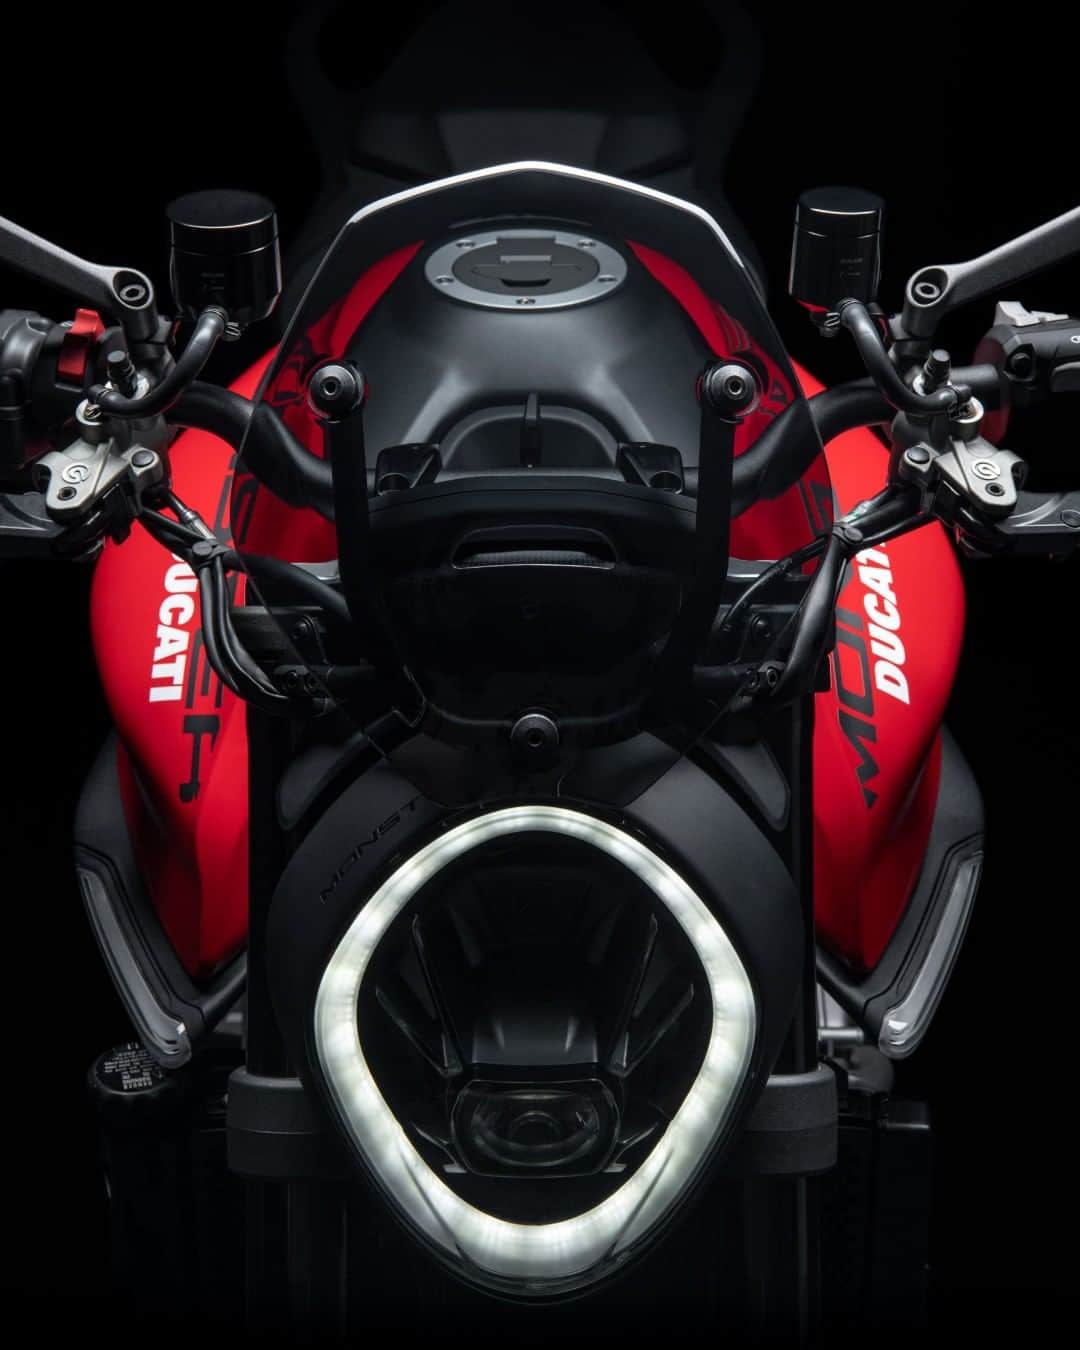 Ducati Japanのインスタグラム：「Happy Halloween🎃  実はドゥカティには今日にぴったりなモデルがあるのです！  １つは「Monster」（怪物） 軽量コンパクトな車体に、パワフルなテスタストレッタ11°エンジンを搭載。それでいてしなやかで乗りやすいこのモデルはまさに「怪物」といえるでしょう。  もう1つは「Diavel V4」（Diavelはイタリア語で悪魔） V4グランツーリスモ・エンジンを中心に細部まで考え抜かれてデザインされたディアベルV4は力強く、スポーティ、エレガントでありながらも、あらゆるライディング・シーンで「悪魔」のような圧倒的な存在感を放ちます。  皆さんはどちらがお好みですか？ どうぞ素敵なハロウィンをお過ごしください  #ドゥカティ #Ducati #ドゥカティいいじゃん #モンスター #Monster #ネイキッド #ディアベル #Diavel #クルーザーバイク #halloween」